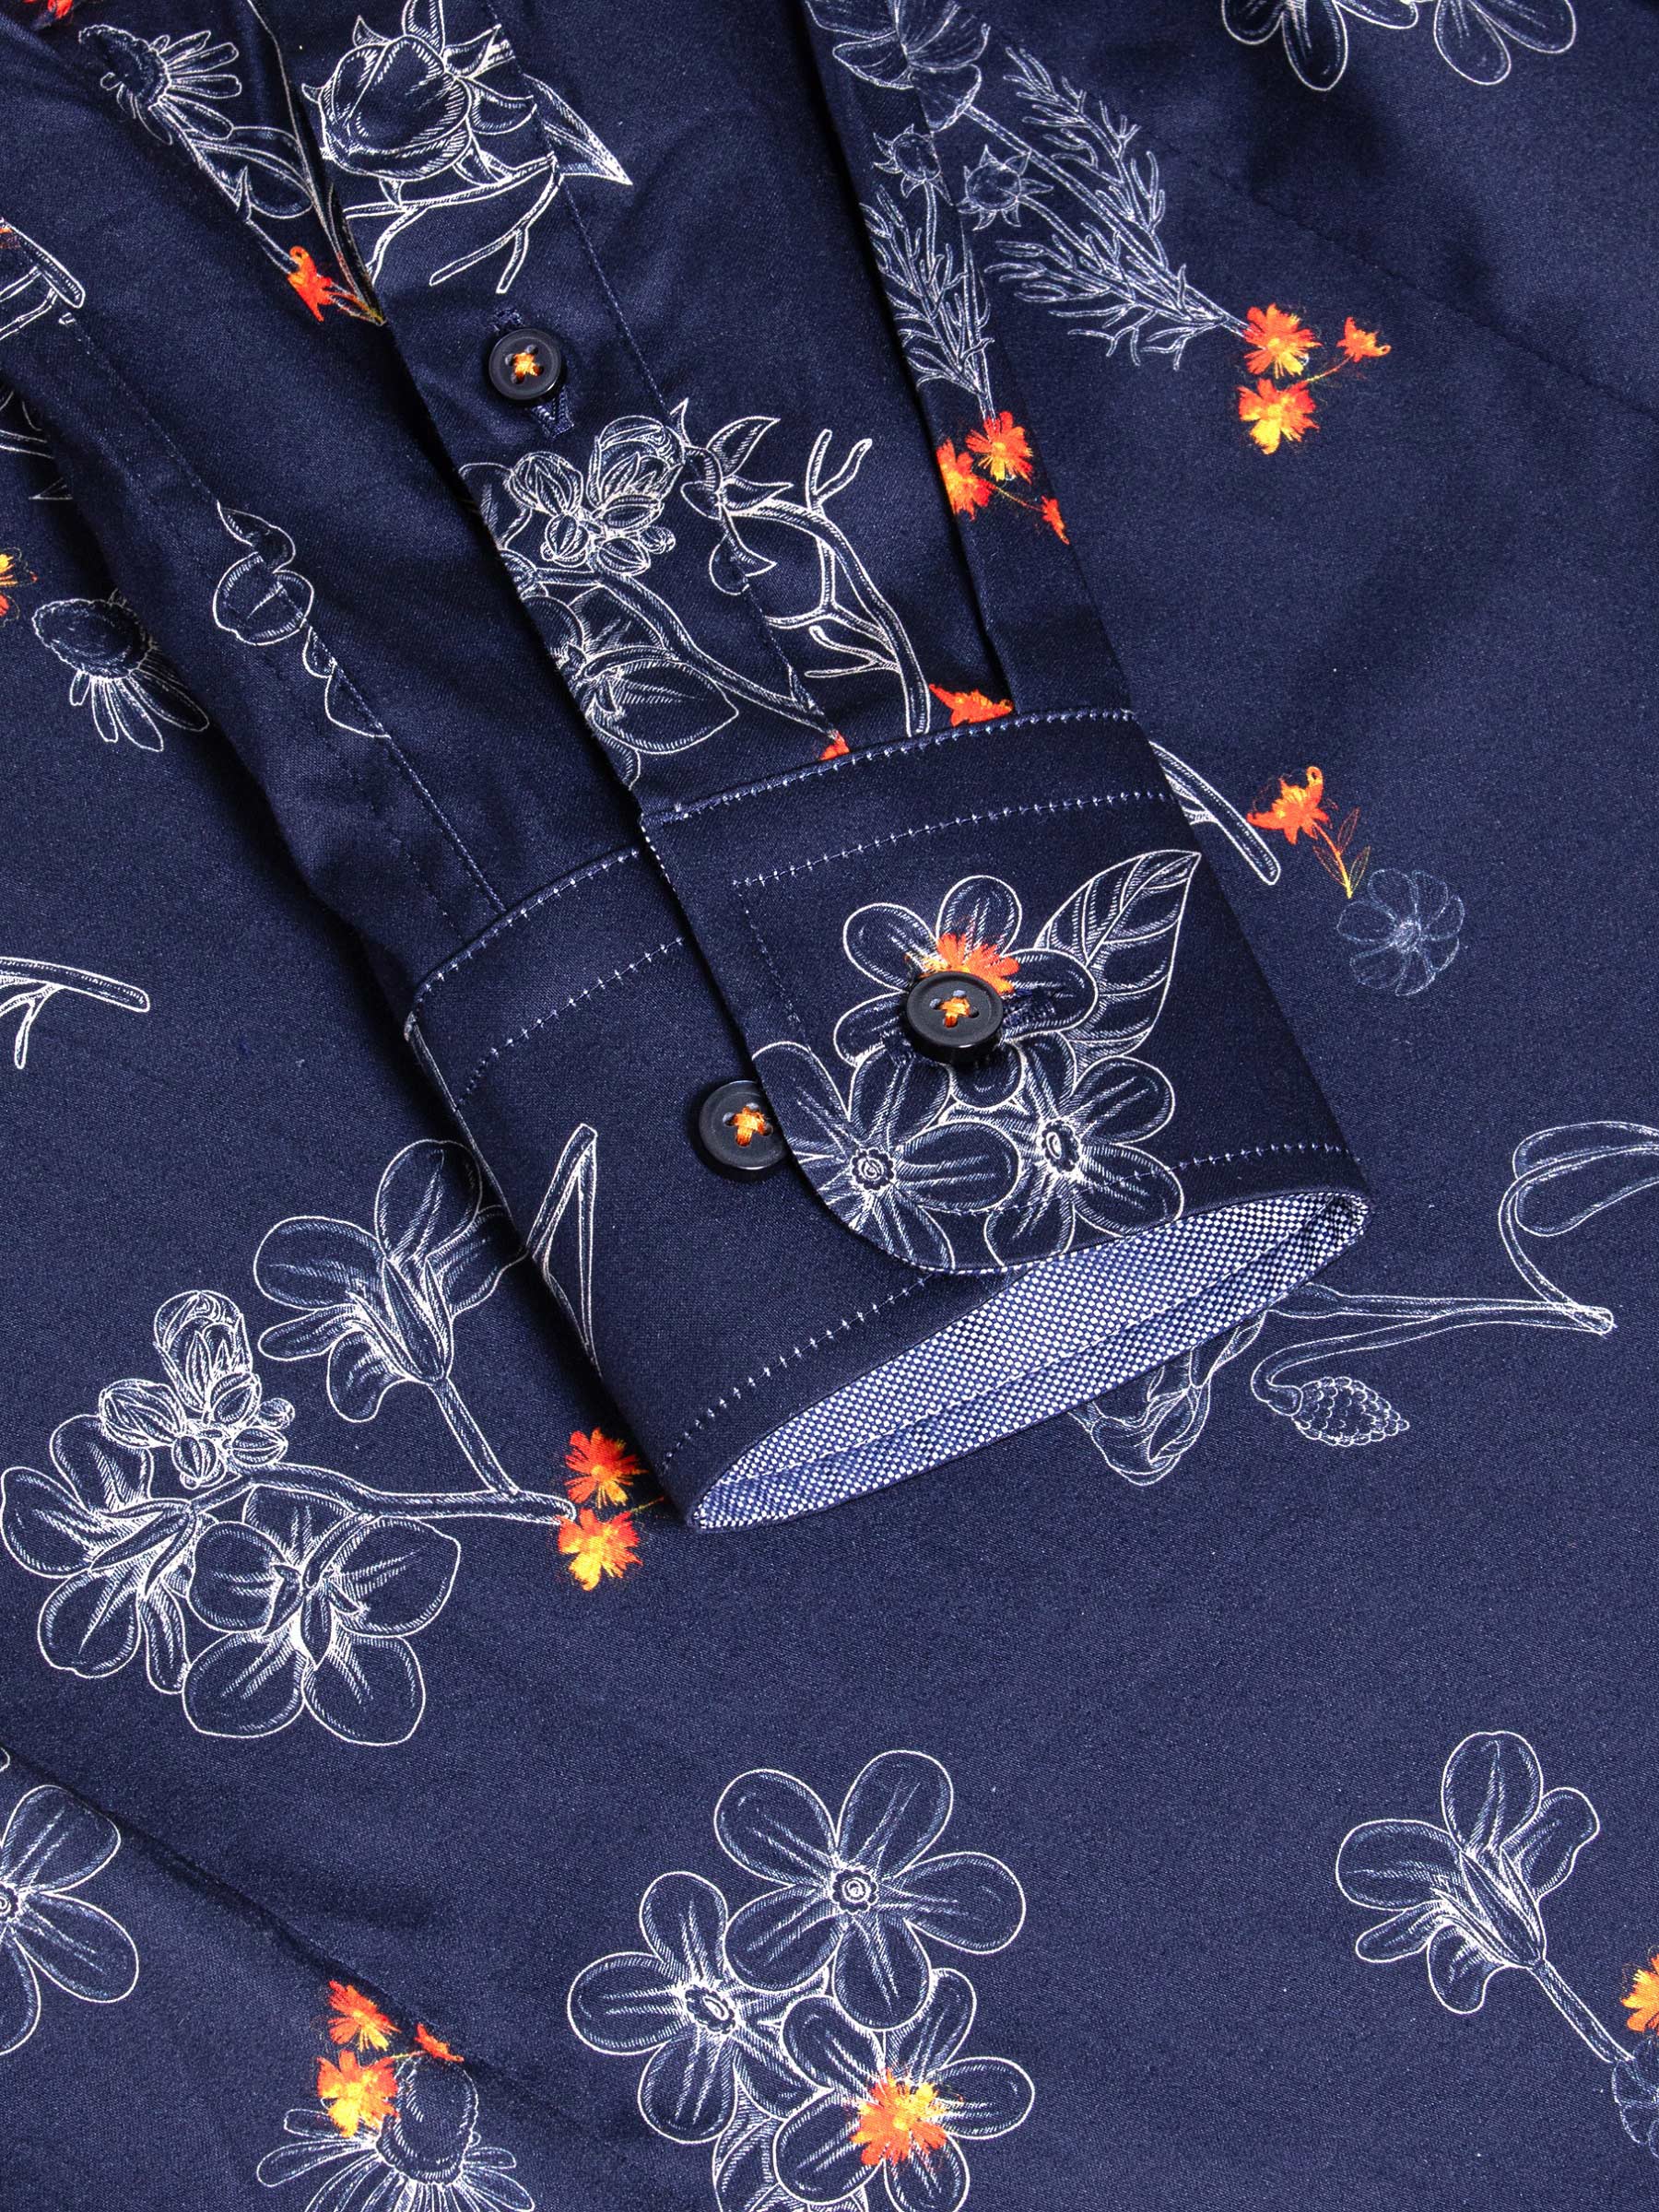 Baga Navy Long Sleeve Floral Print Shirt